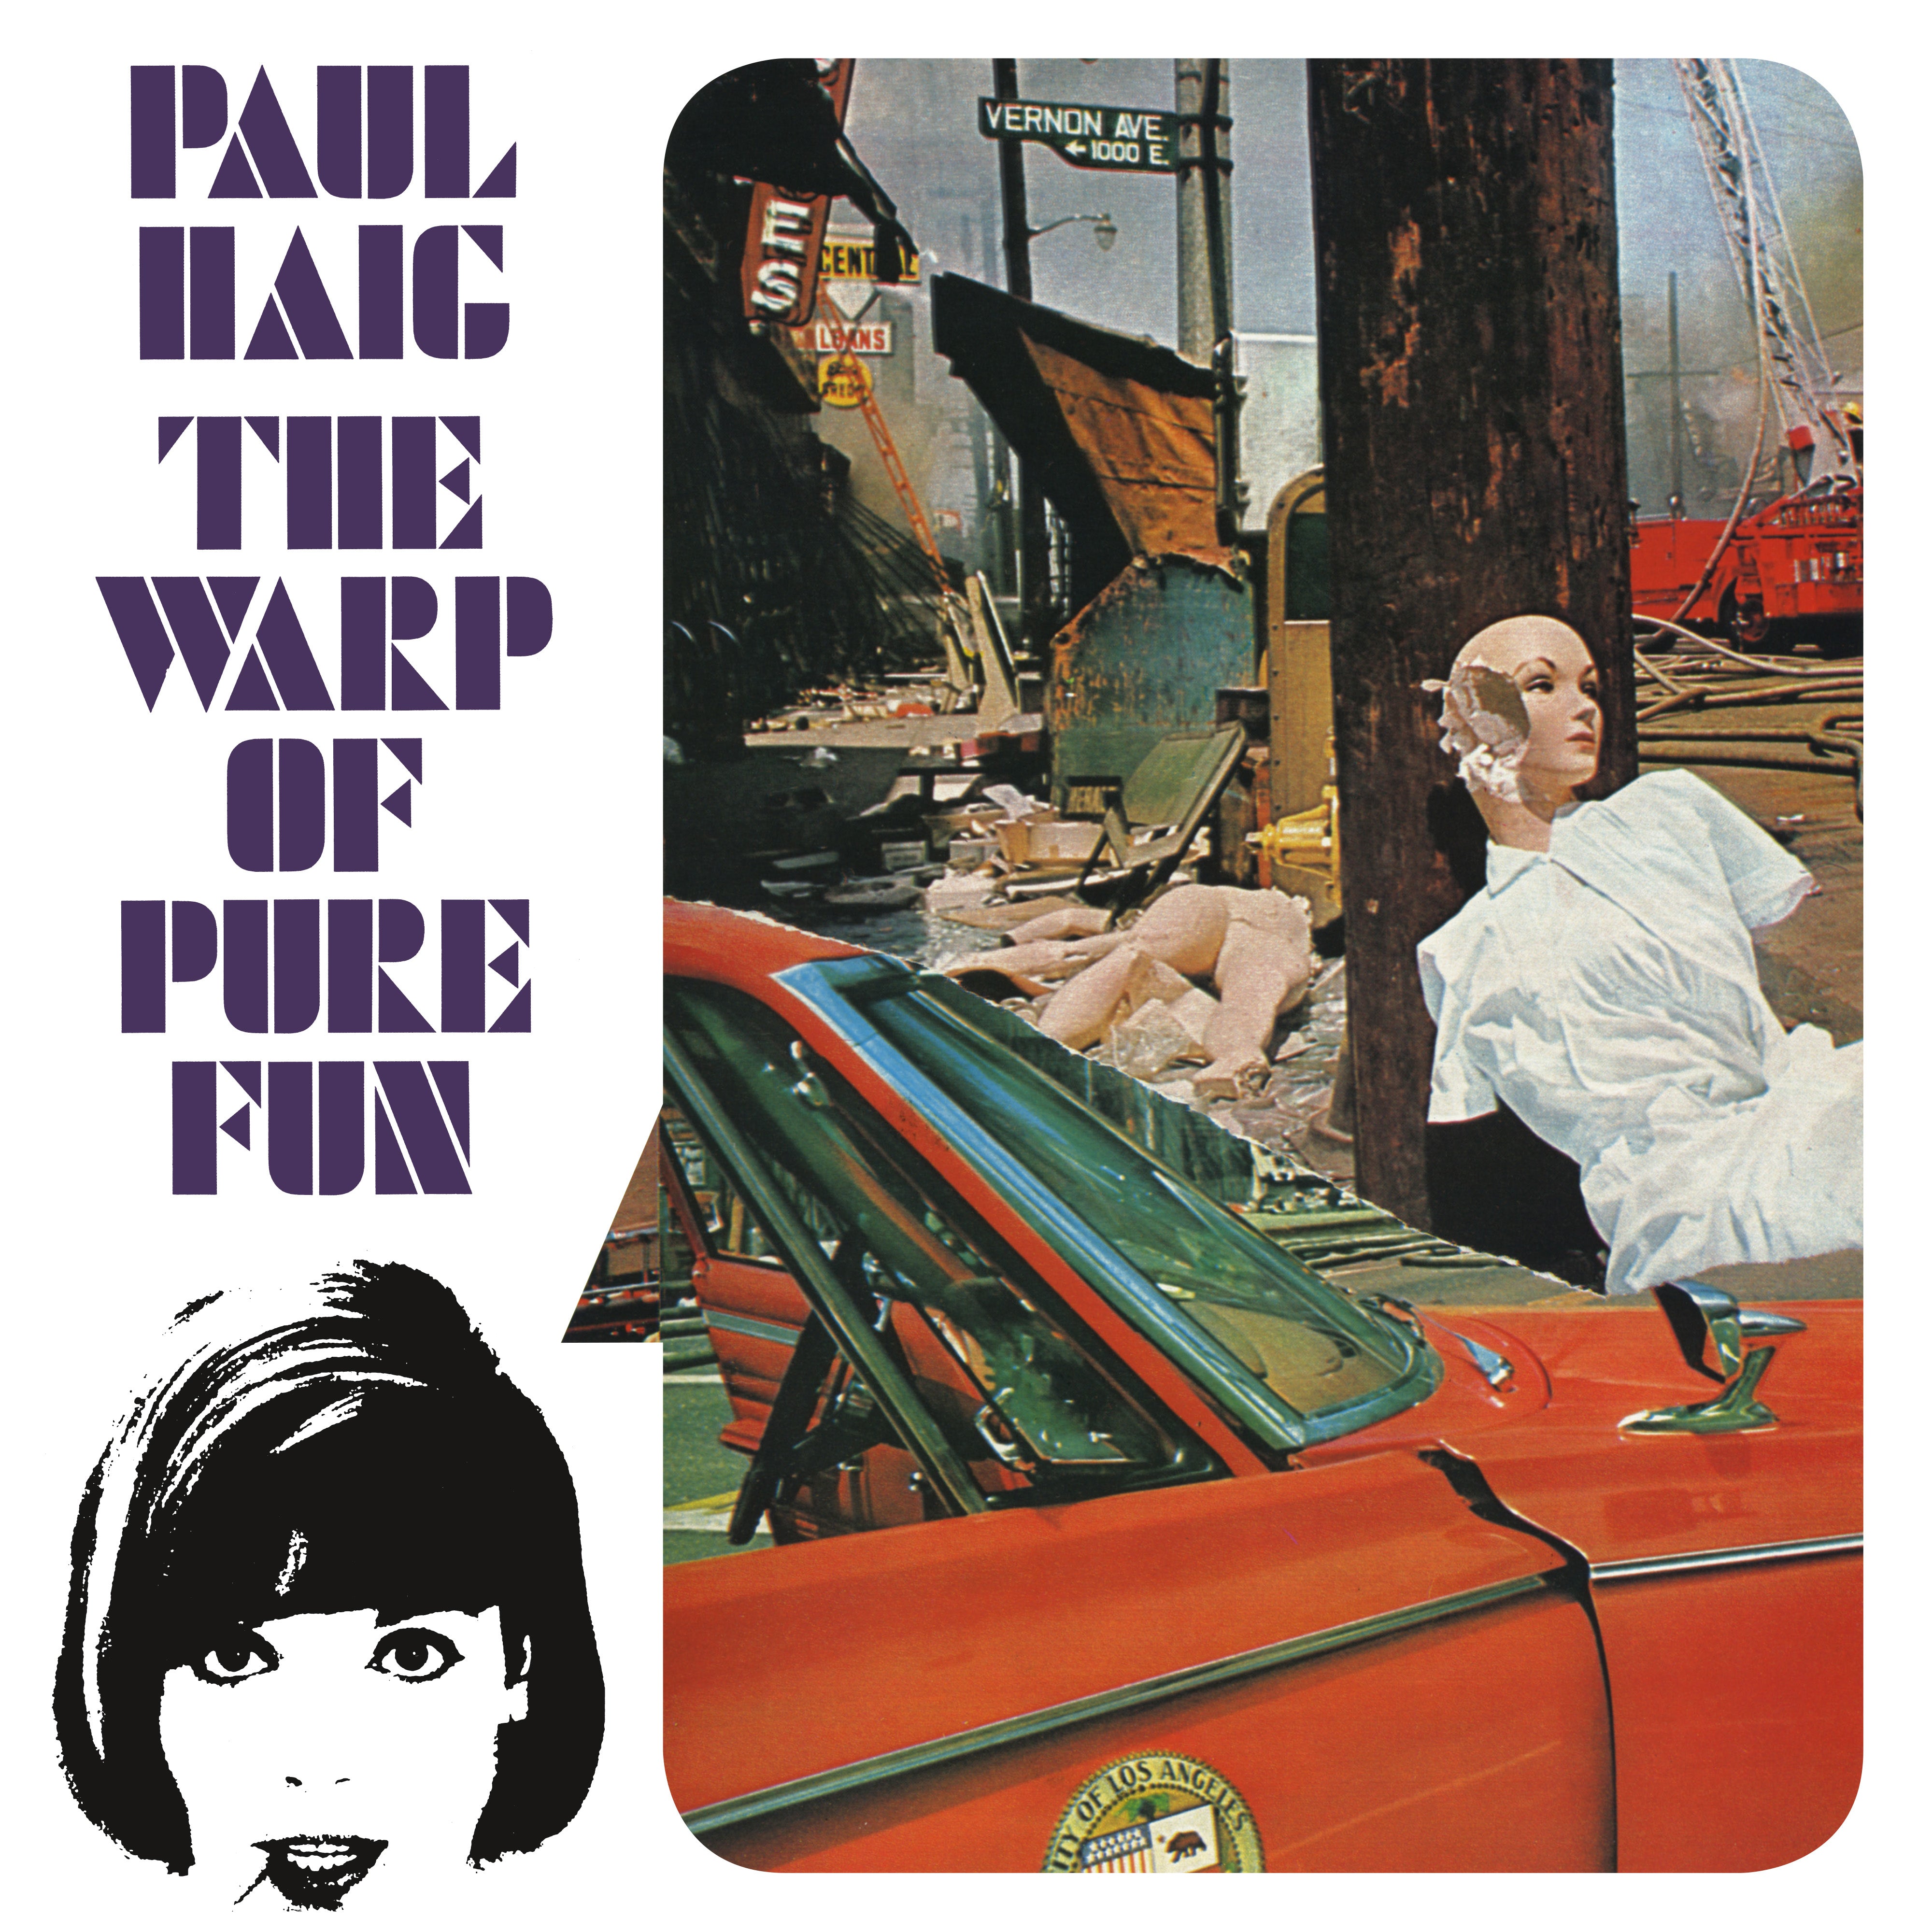 Paul Haig - The Warp of Pure Fun